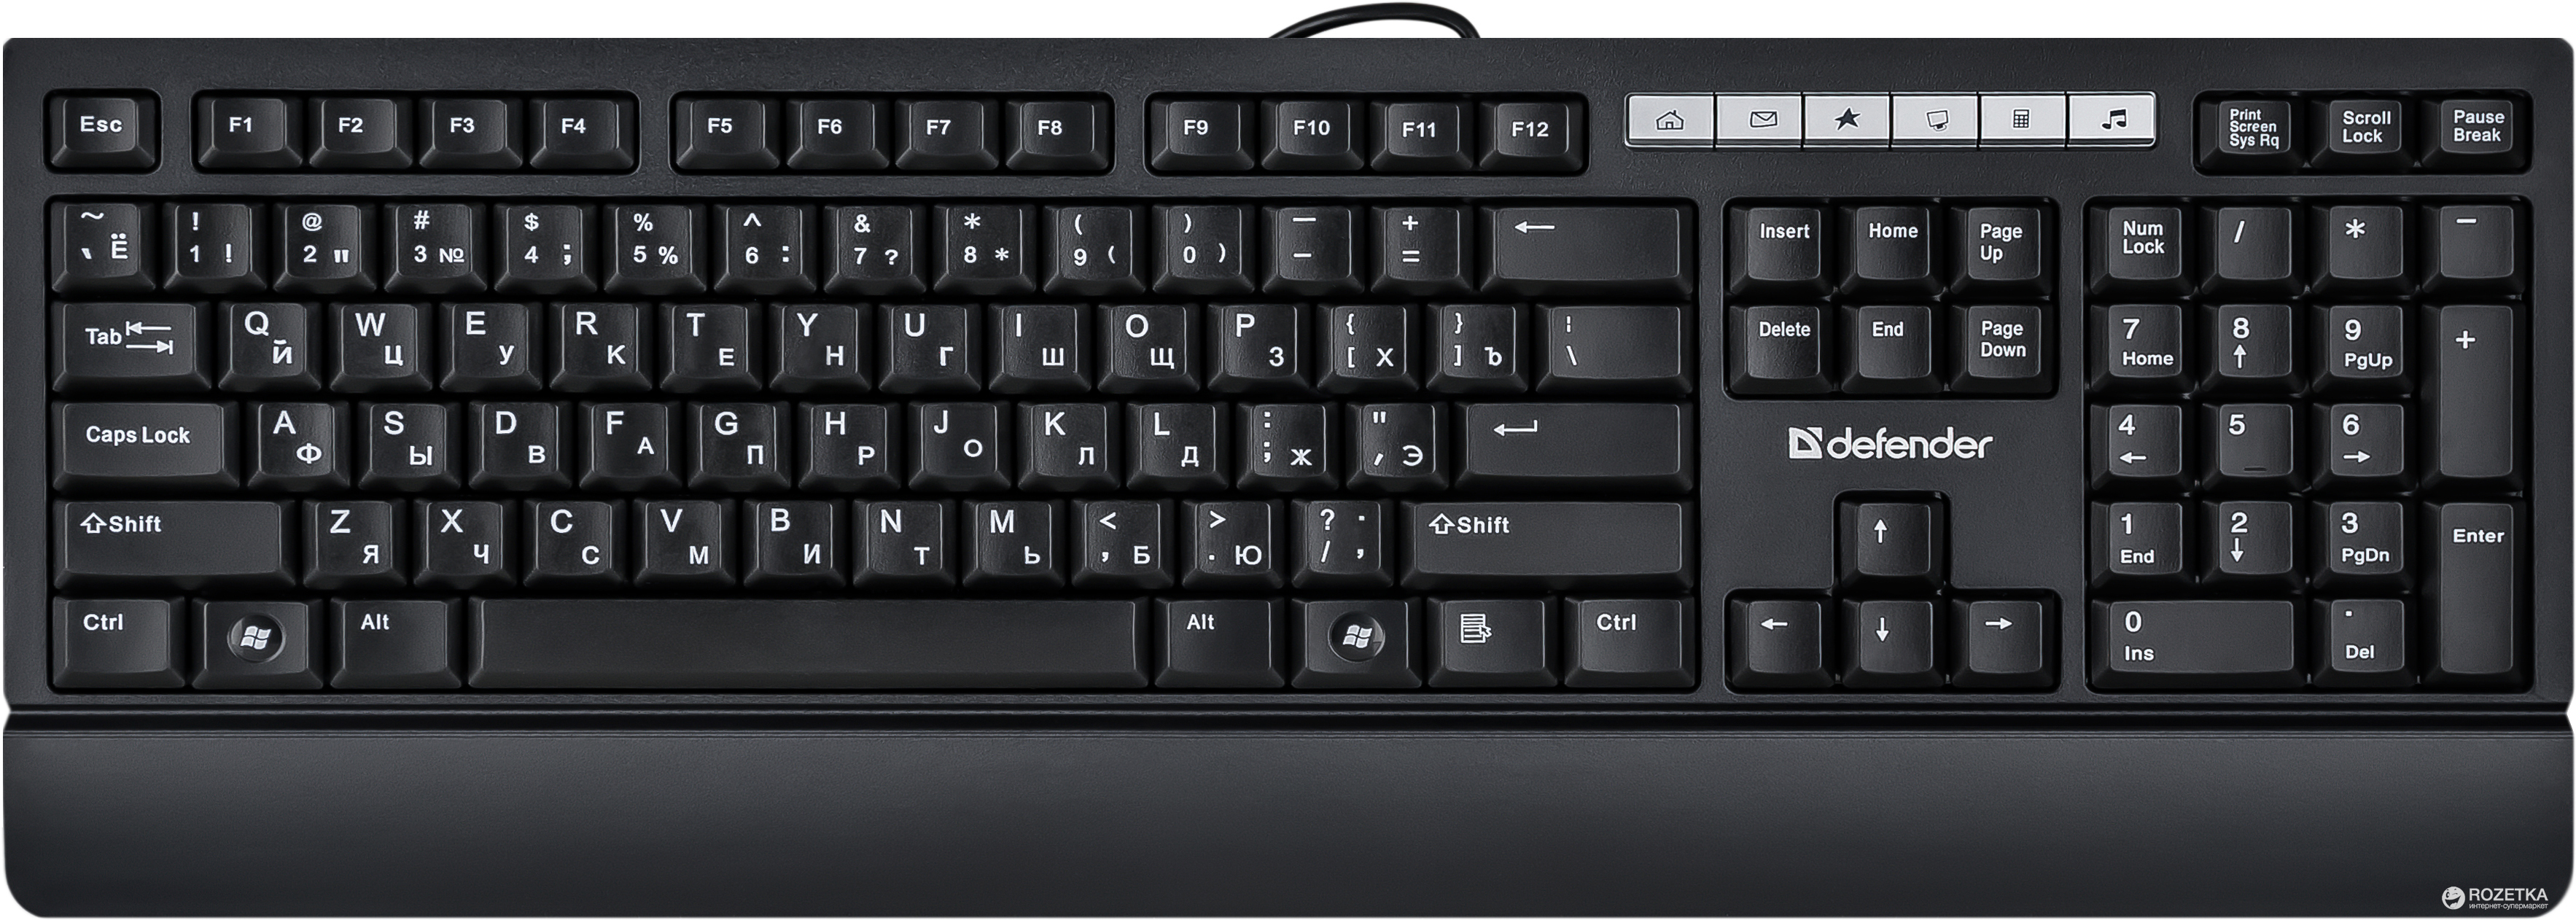 Defender Проводная клавиатура Episode SM-950 RU,черный,полноразмерная USB